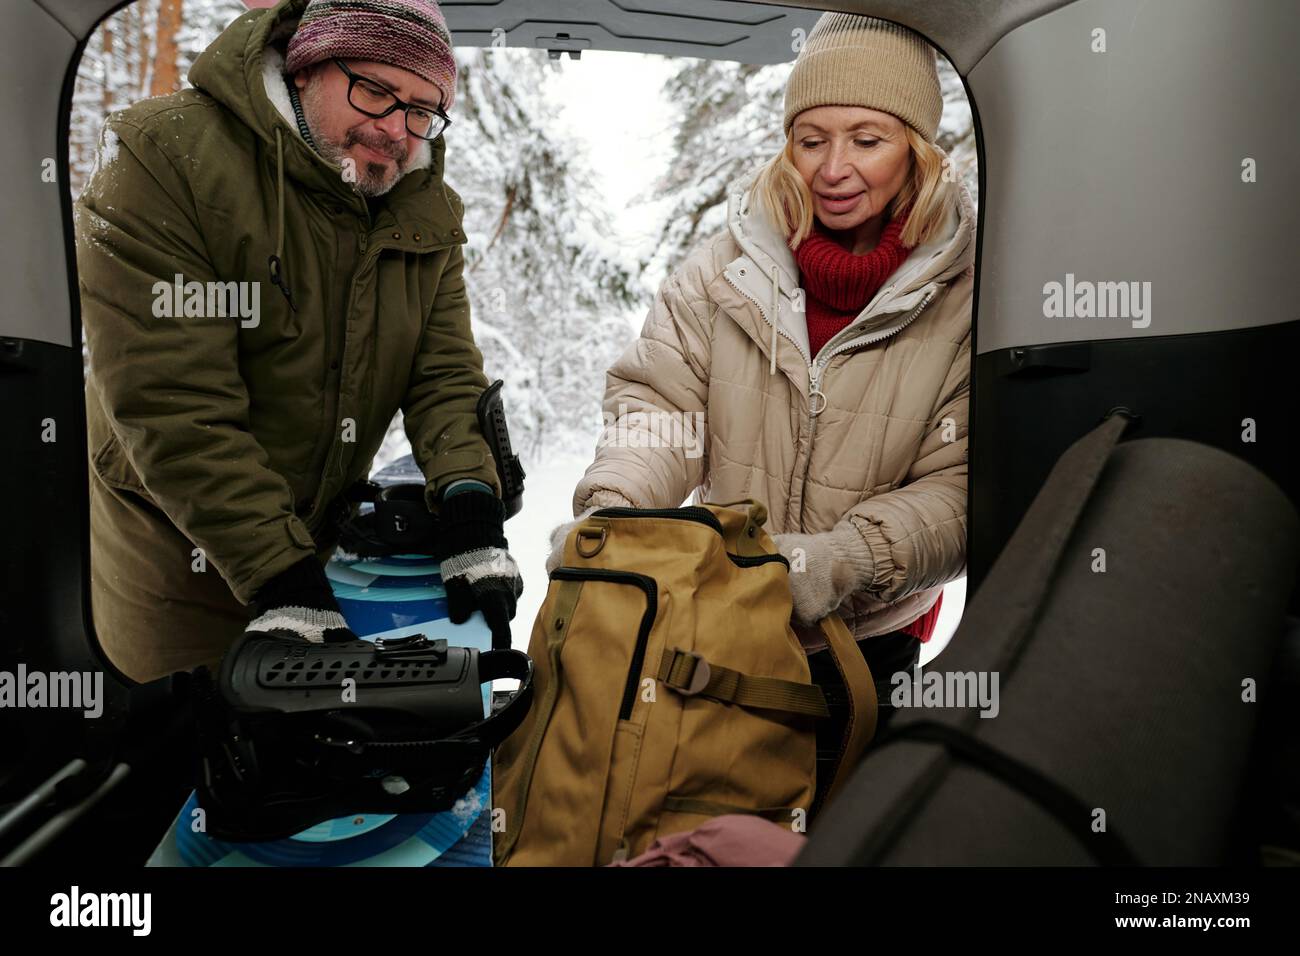 Zwei reife Touristen in Winterkleidung, die das Snowboard aus dem Kofferraum nehmen, während eine Frau ihrem Mann hilft und den Rucksack mit Essen in der Hand hält Stockfoto